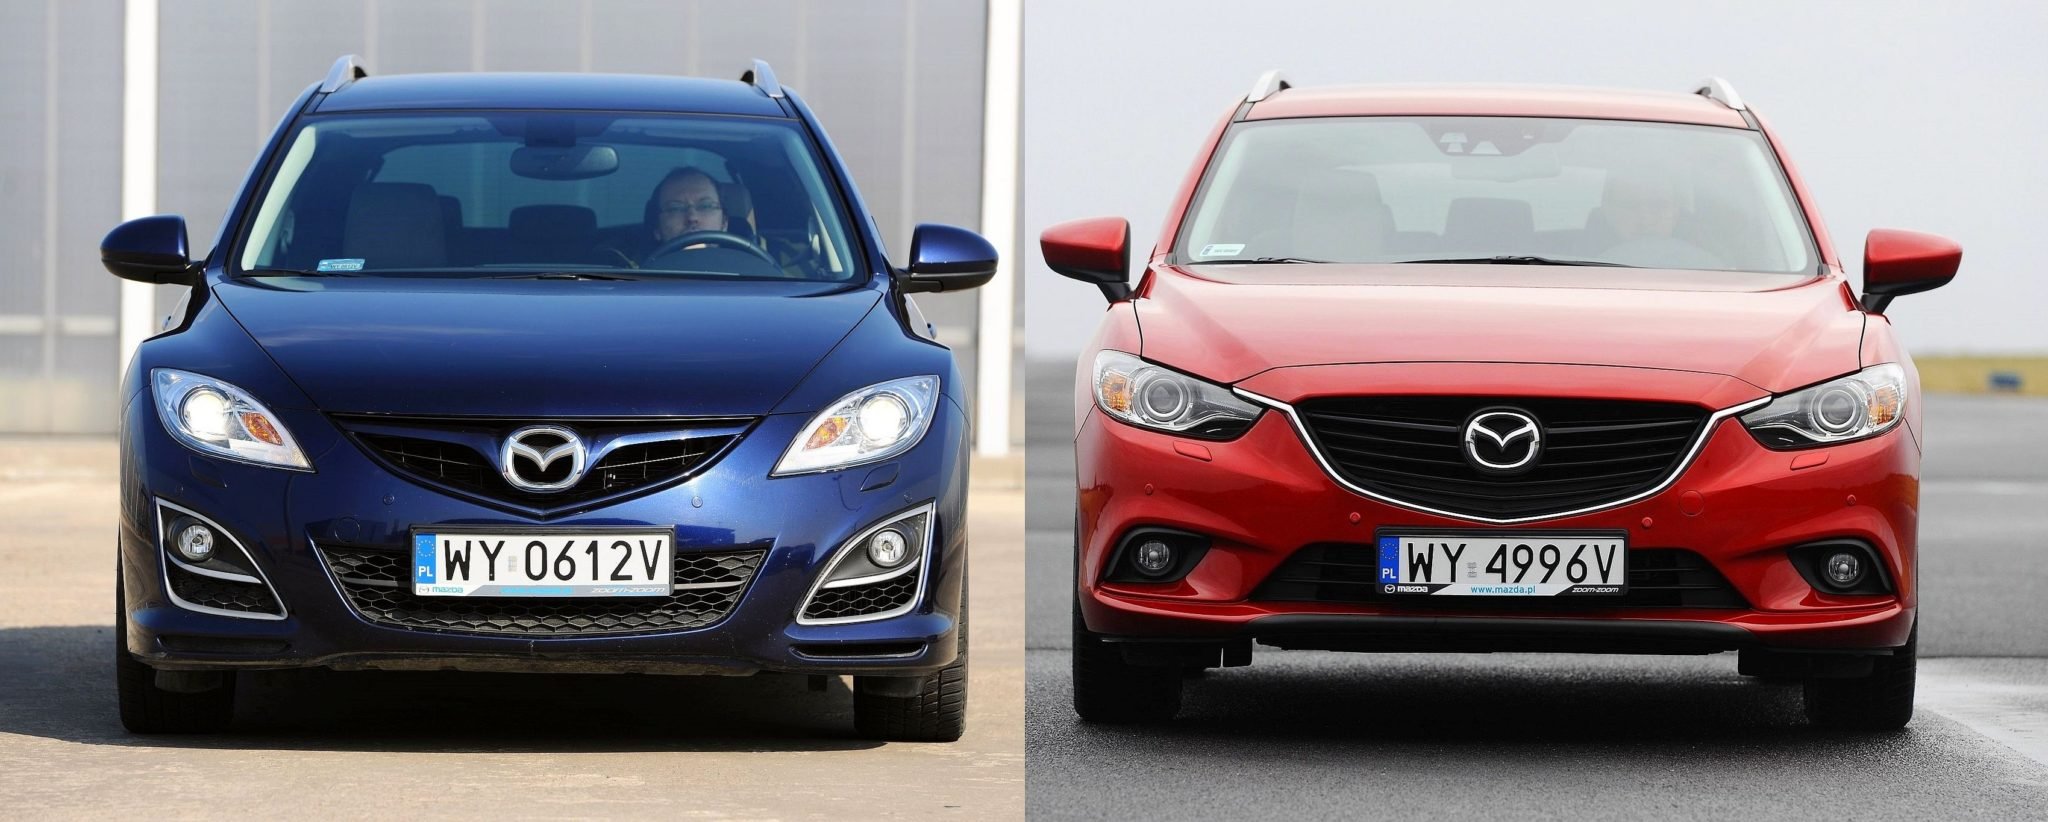 Używana Mazda 6 II czy Mazda 6 III którą generację wybrać?